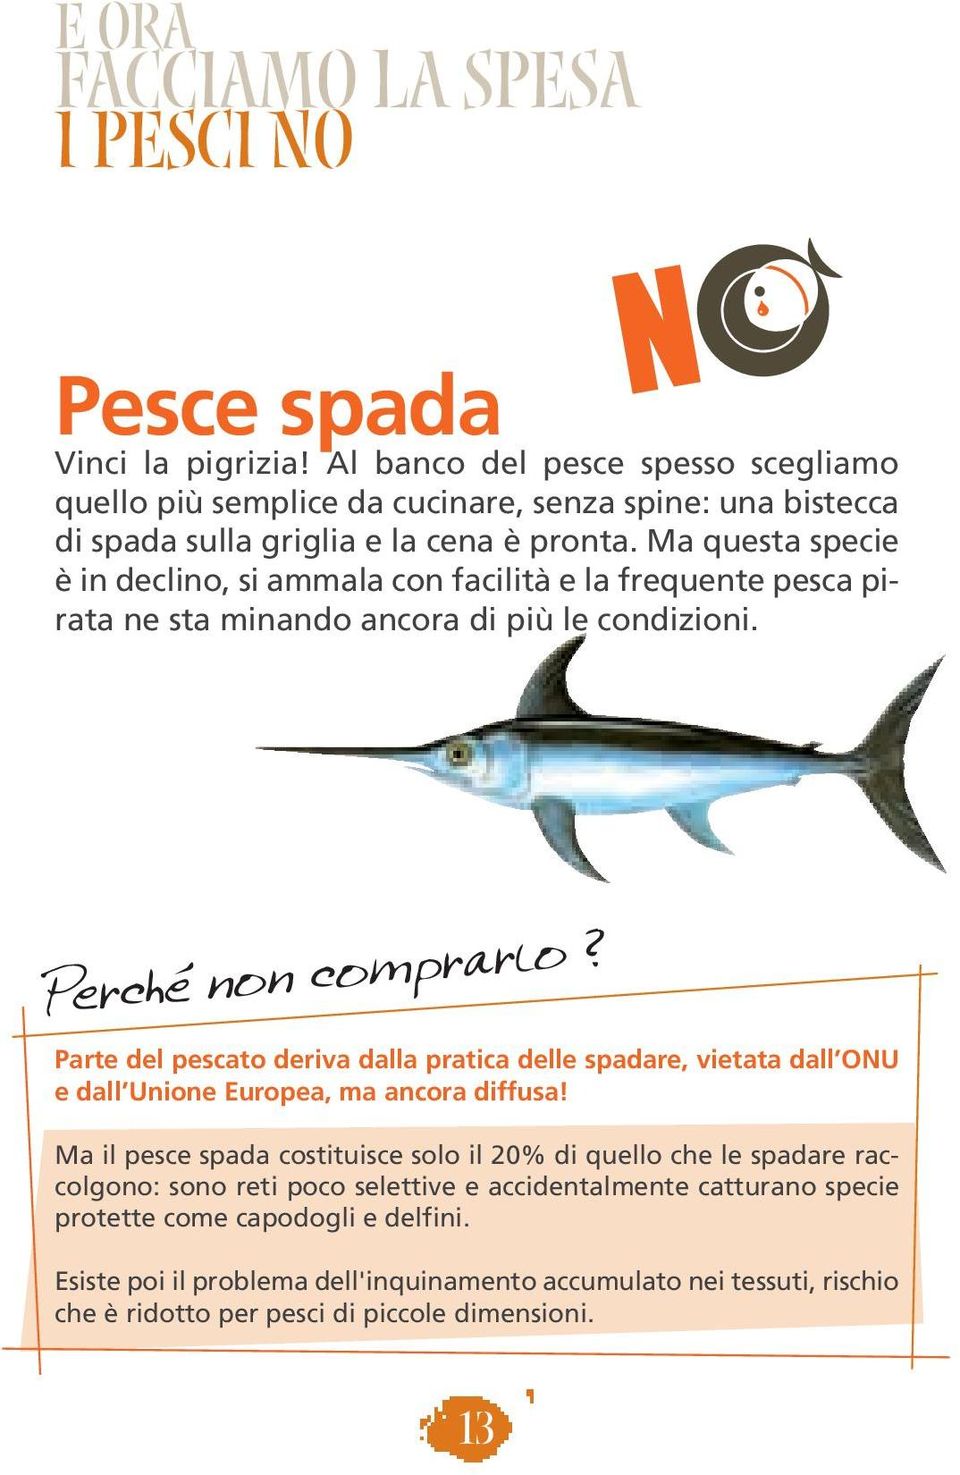 Parte del pescato deriva dalla pratica delle spadare, vietata dall ONU e dall Unione Europea, ma ancora diffusa!